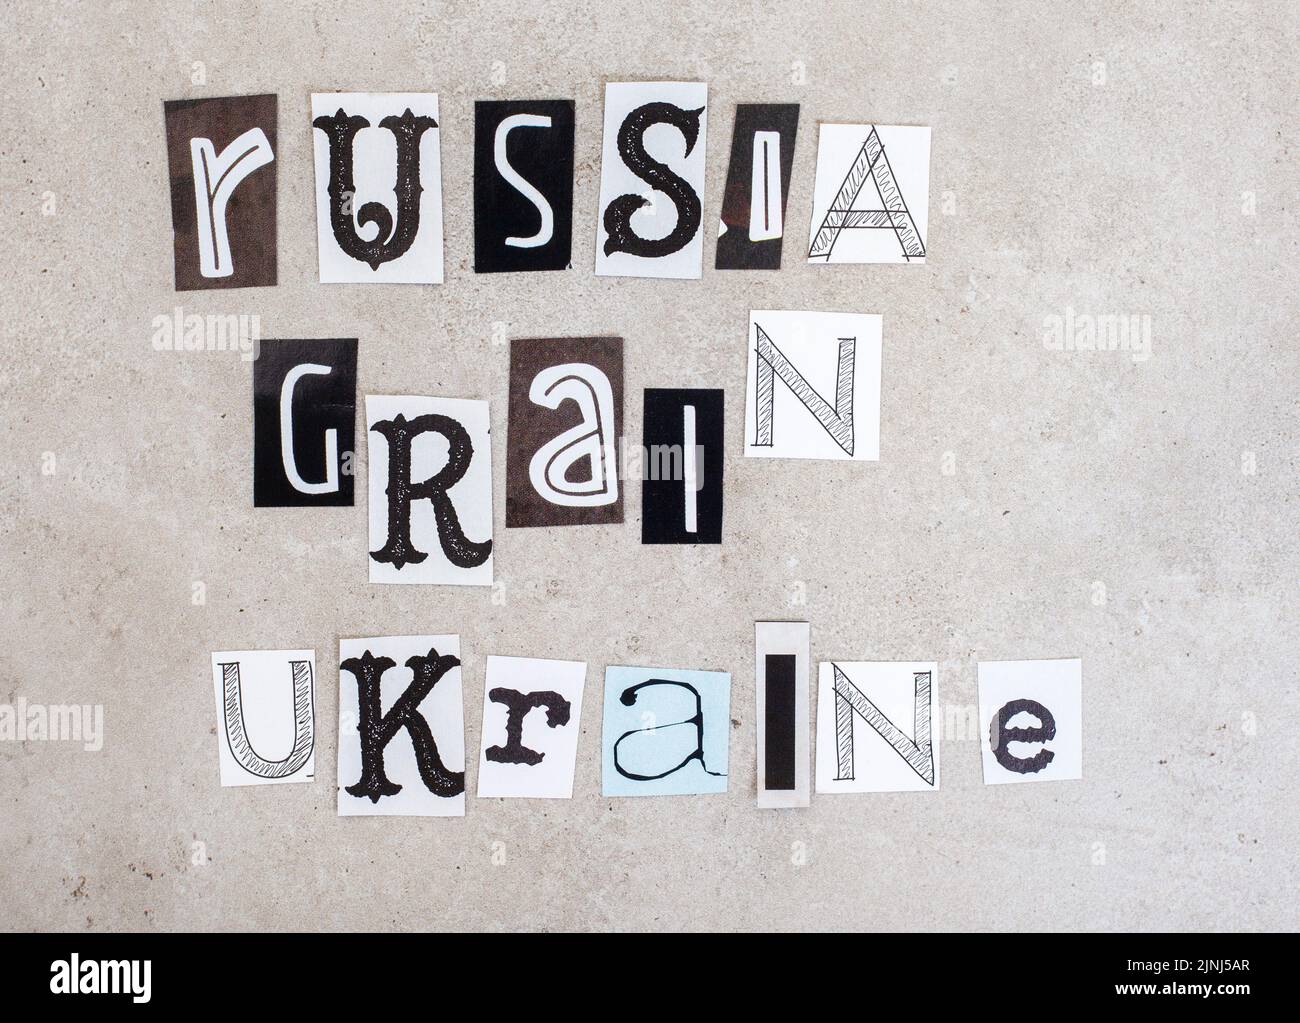 La Russie, l'Ukraine et la guerre, des questions sociales qui l'entourent dans des coupures de presse sur le gris Banque D'Images